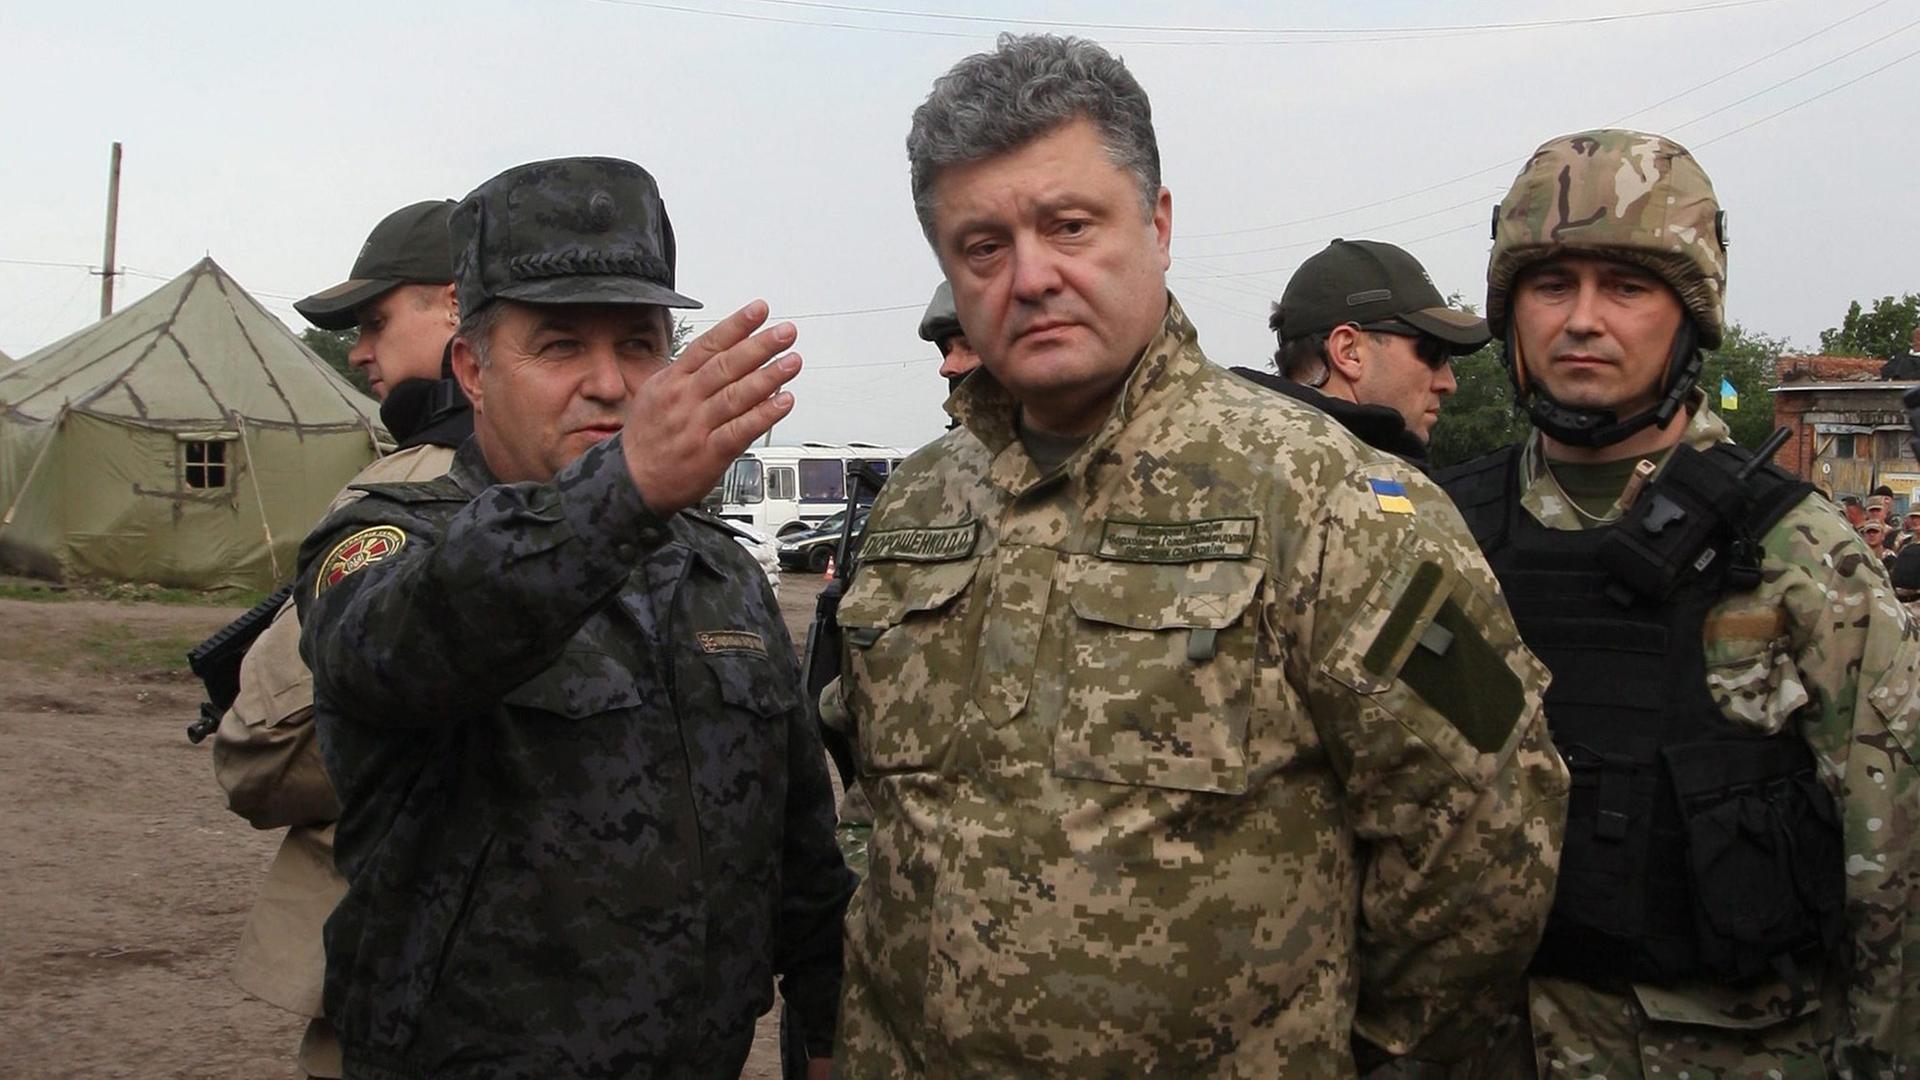 Der ukrainische Präsident Petro Poroschenko steht im Feldanzug gekleidet in einem Militärlager. Neben ihm ein Soldat, der mit ausgestrecktem Arm auf etwas außerhalb des Bildes deutet.